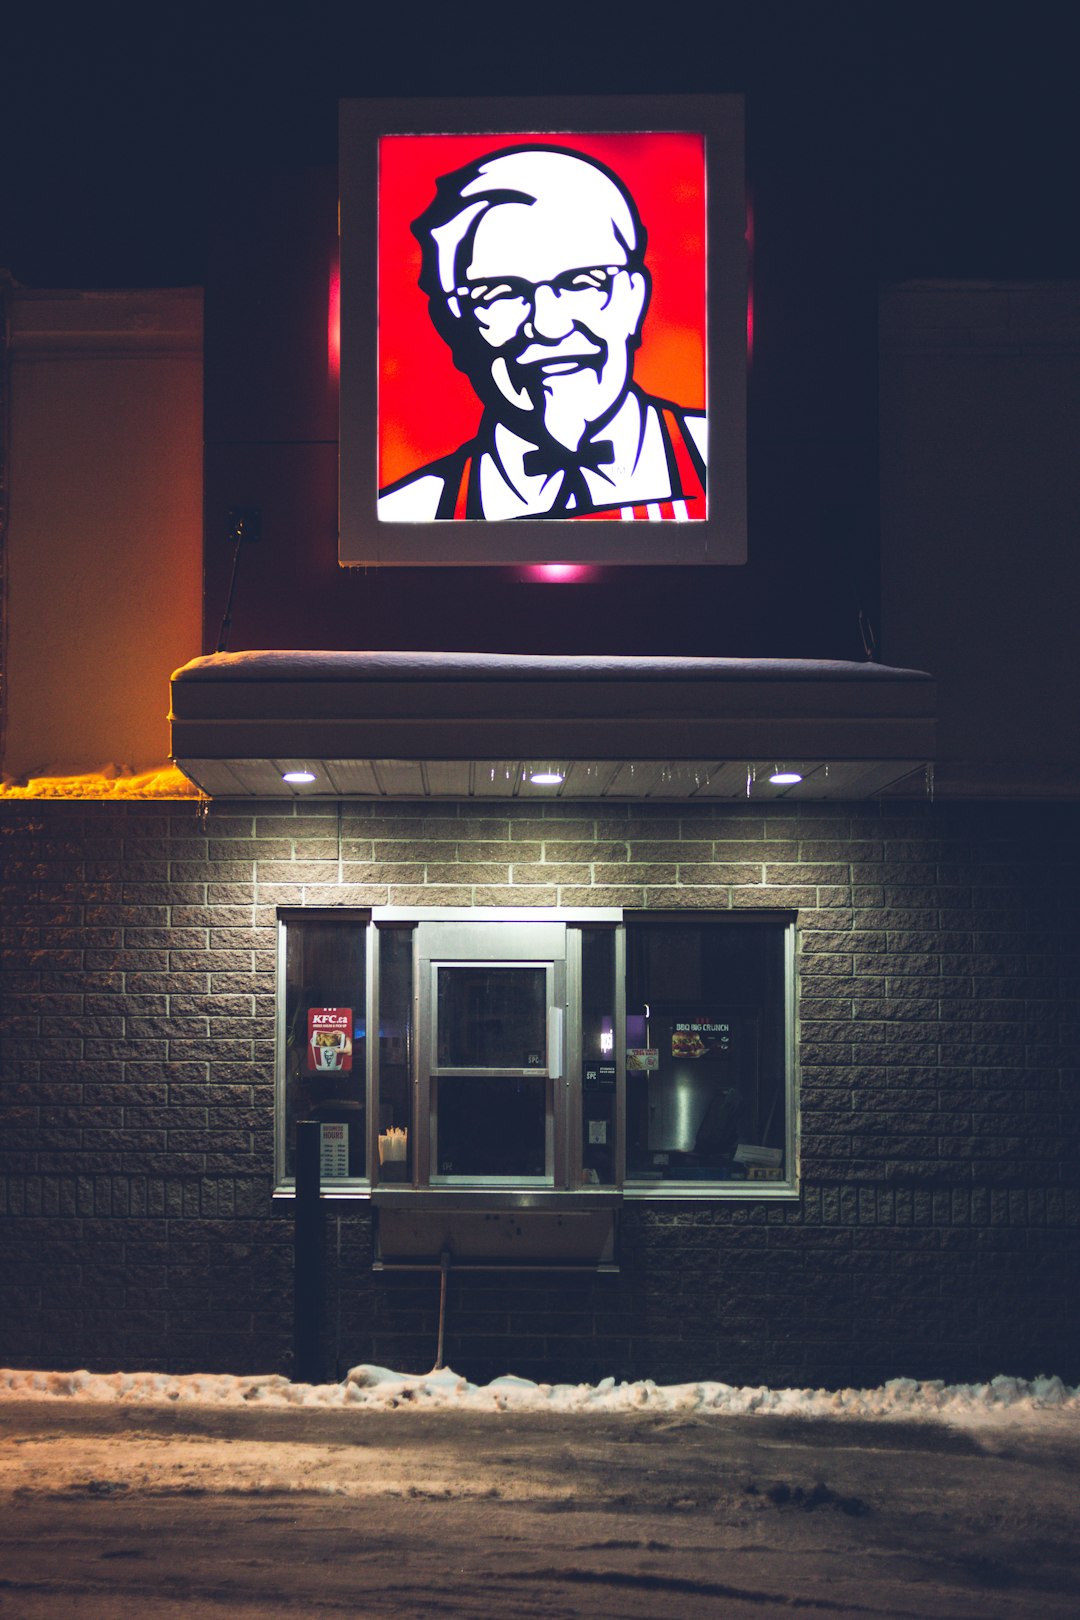 KFC signage